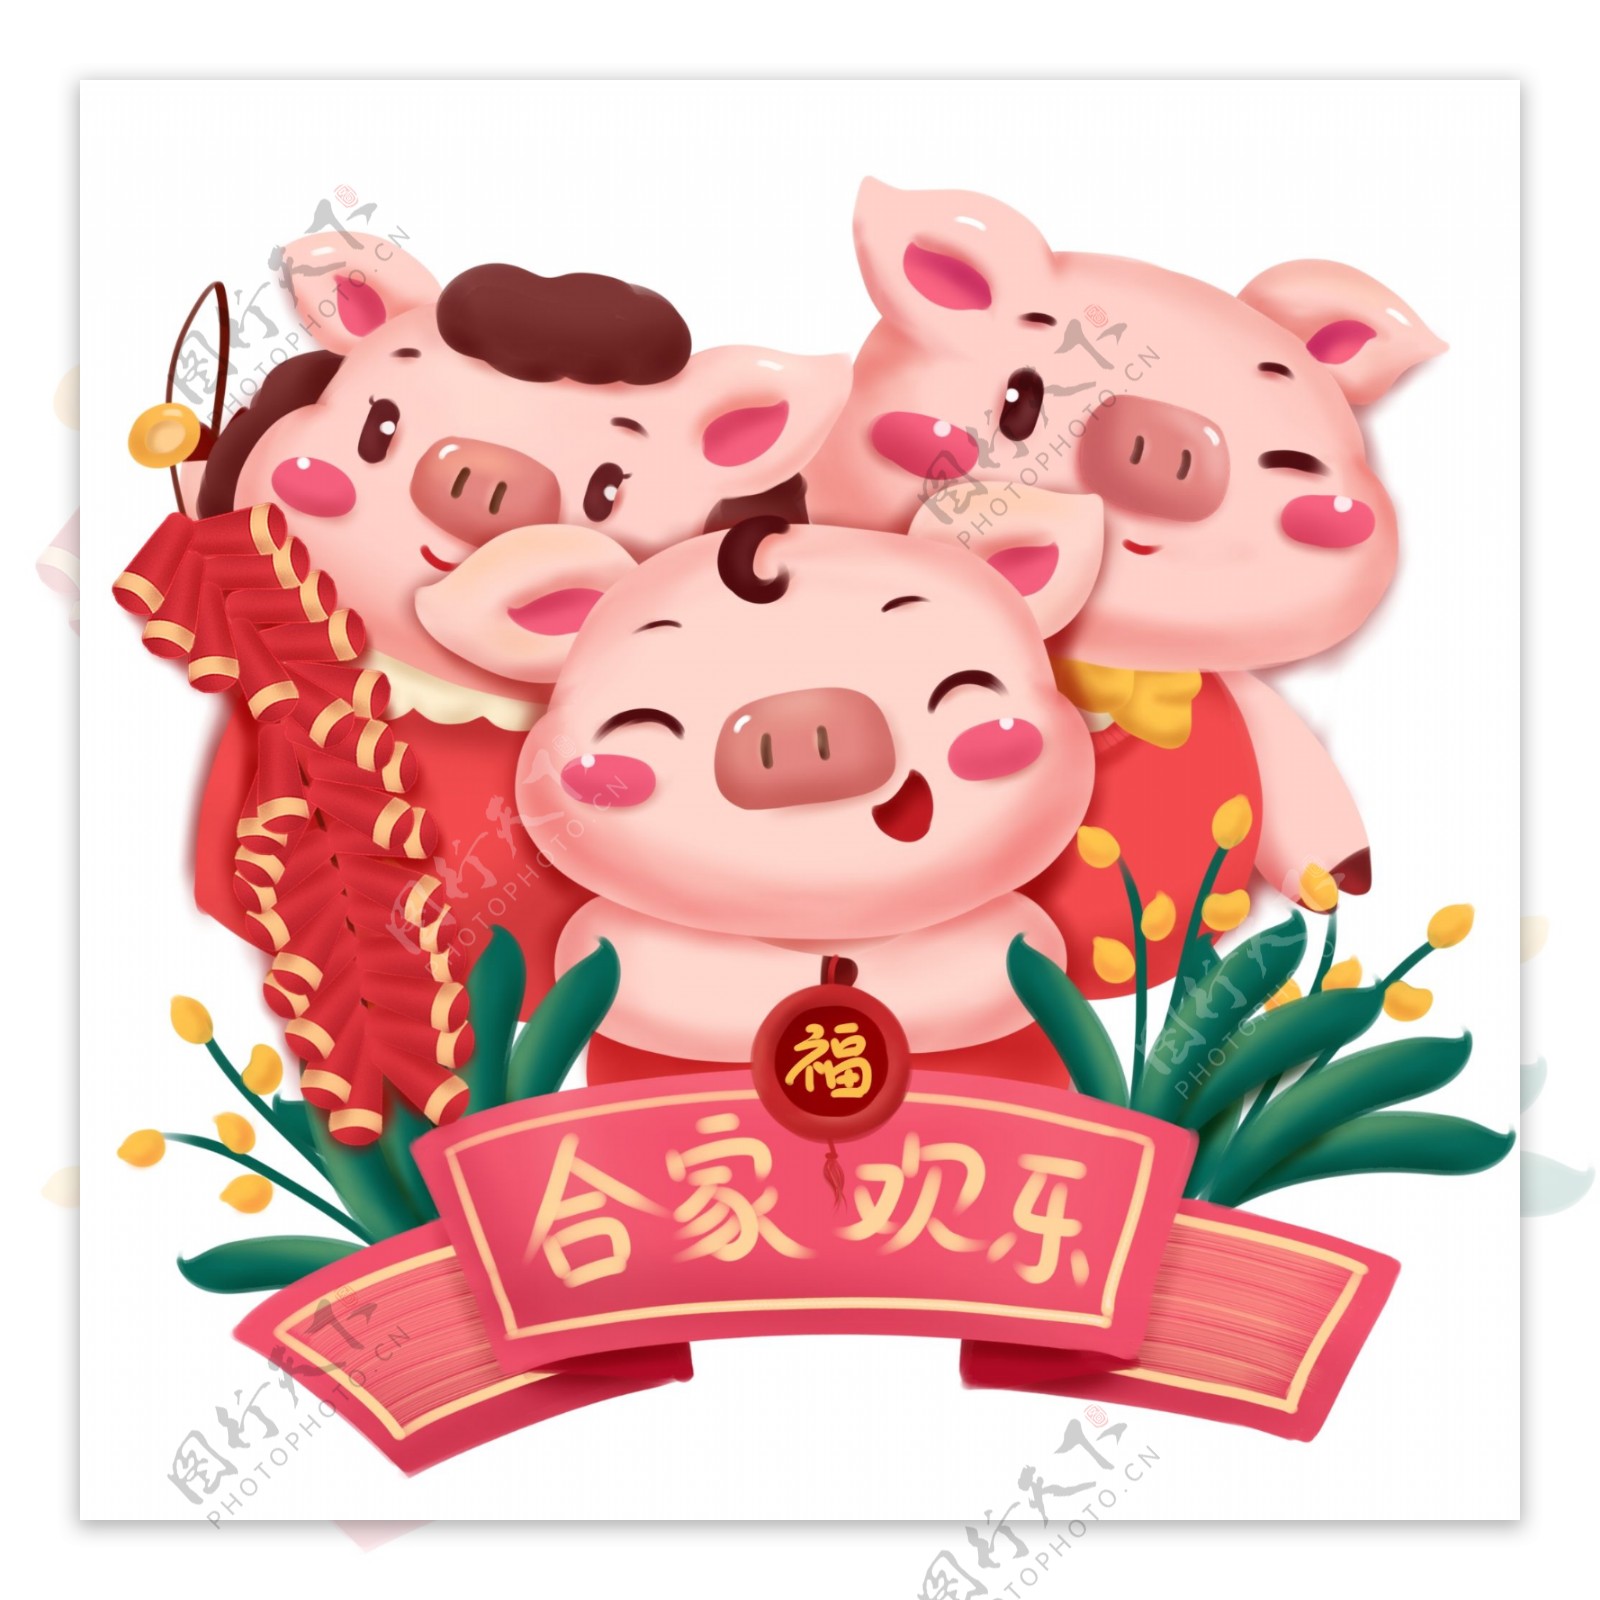 卡通新春猪年动物形象合家欢乐可商用插画